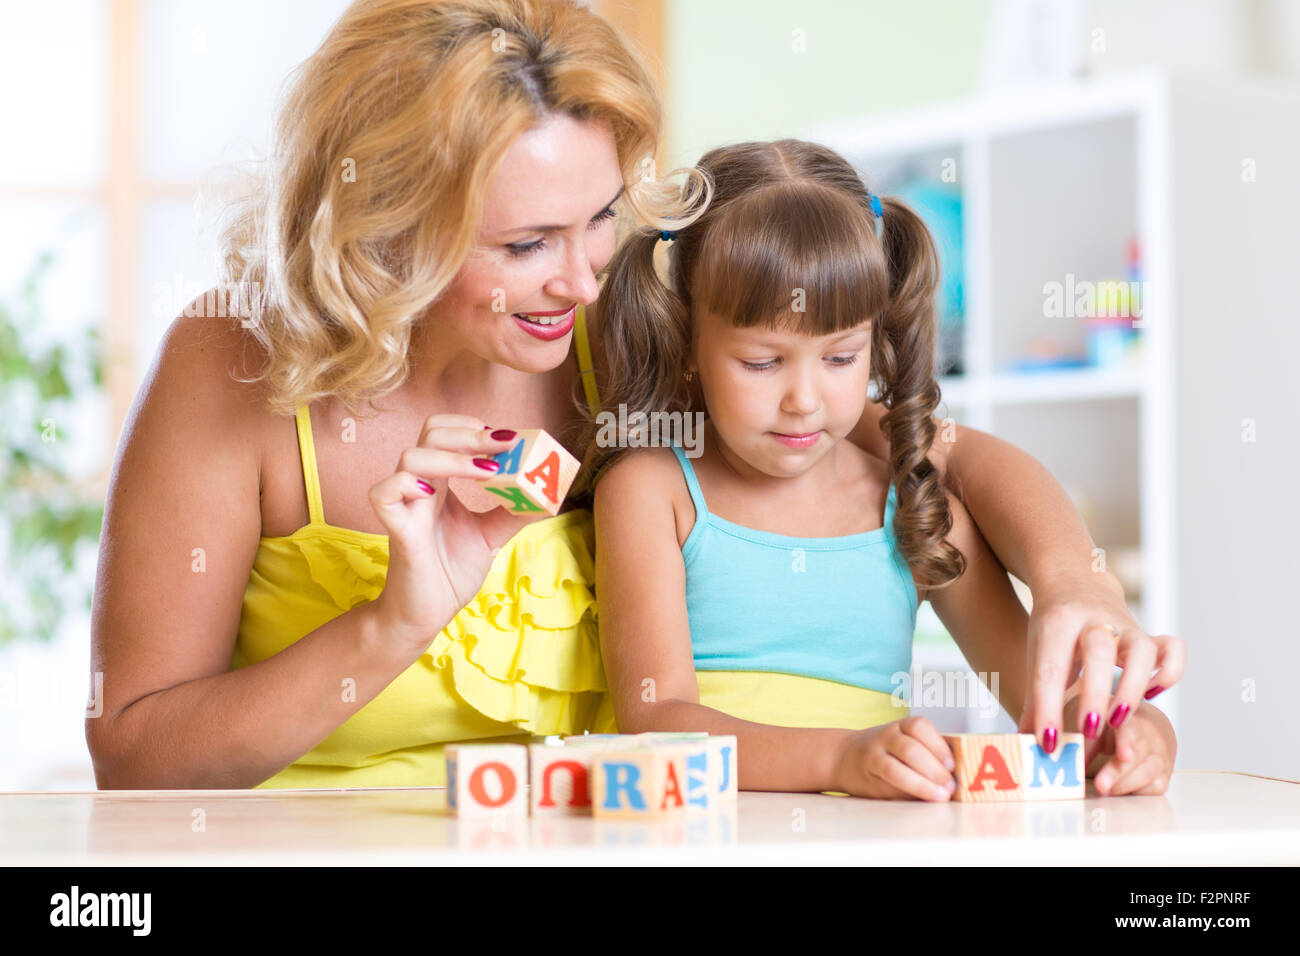 Kind und Mutter das Wort Mama spielen hölzerne Würfel bauen Stockfoto